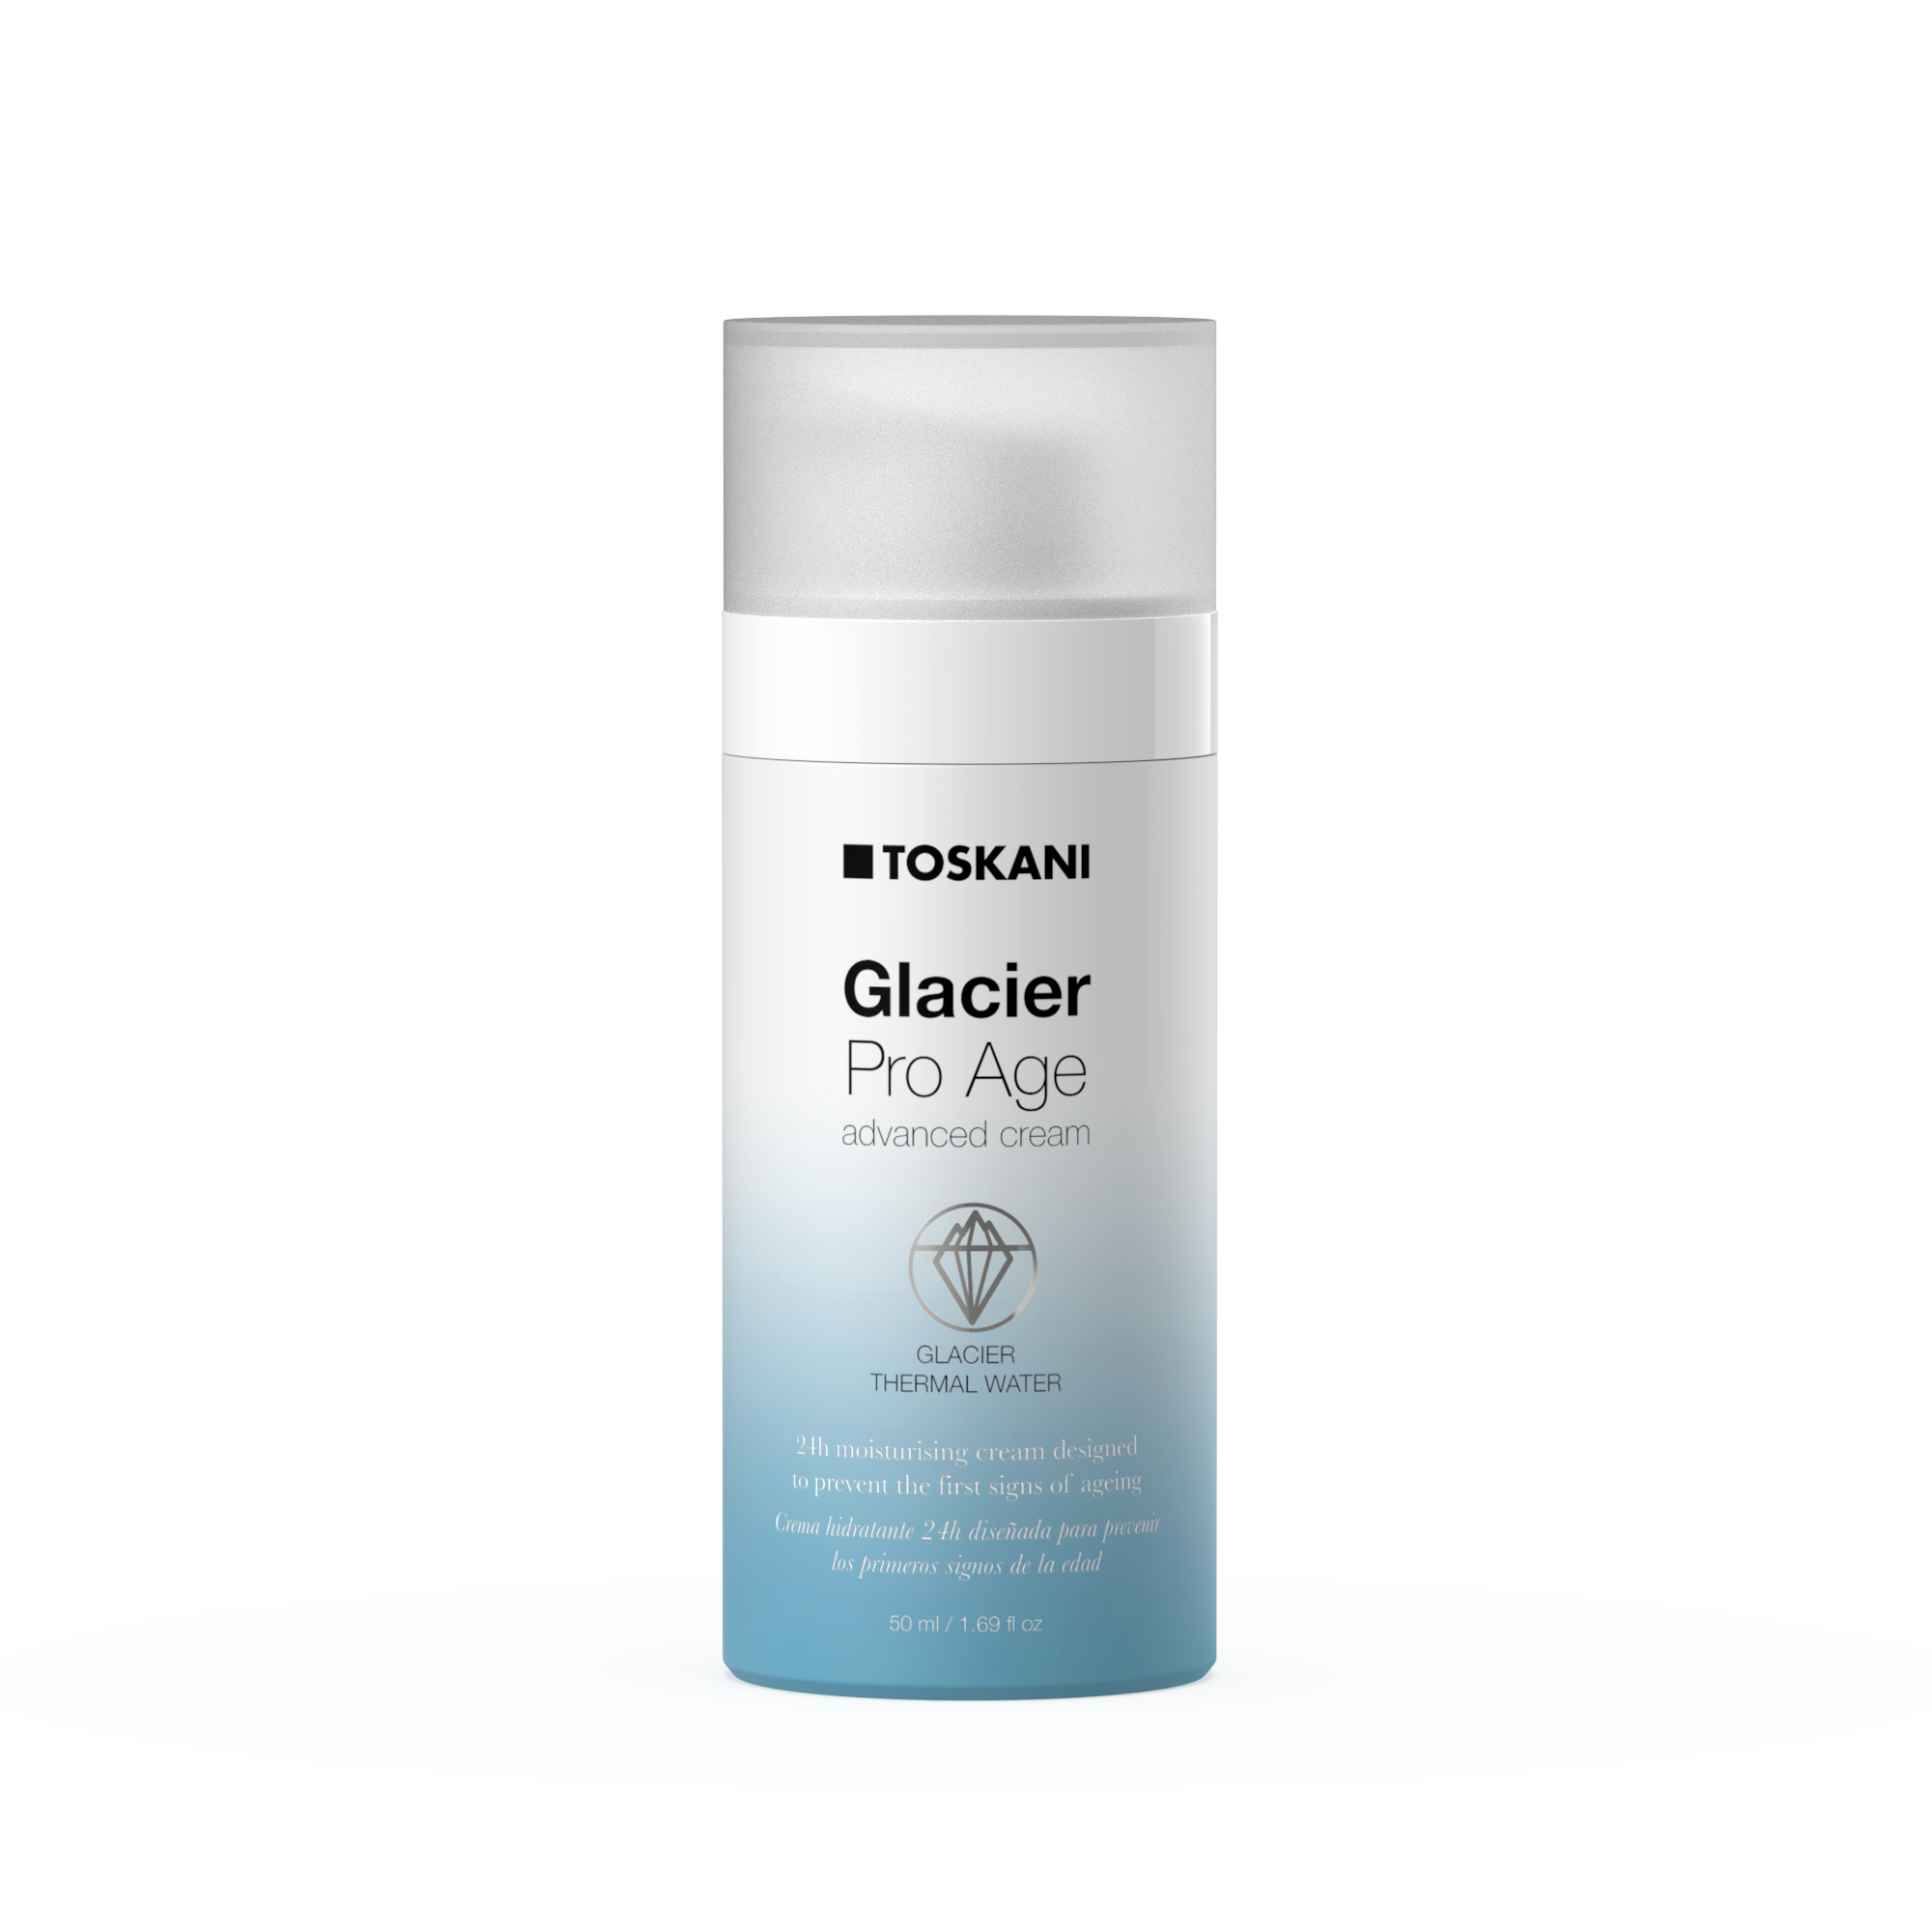 Glacier Pro Age advanced cream